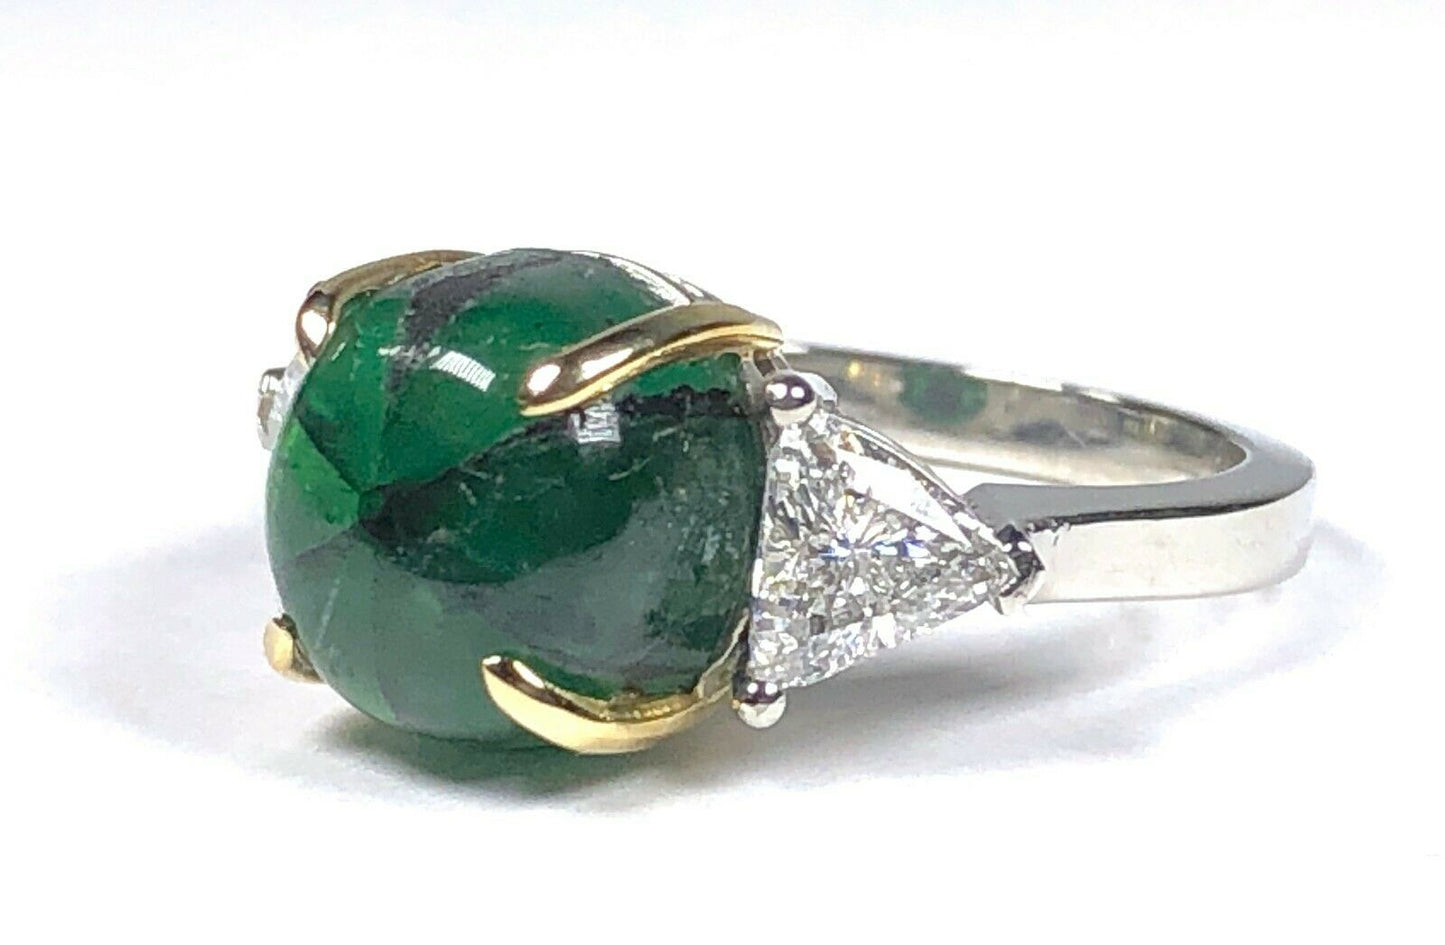 GRS 5.42 ct. Colombian Trapiche Emerald & Trillion Cut Diamond Ring in Platinum & 18K Gold